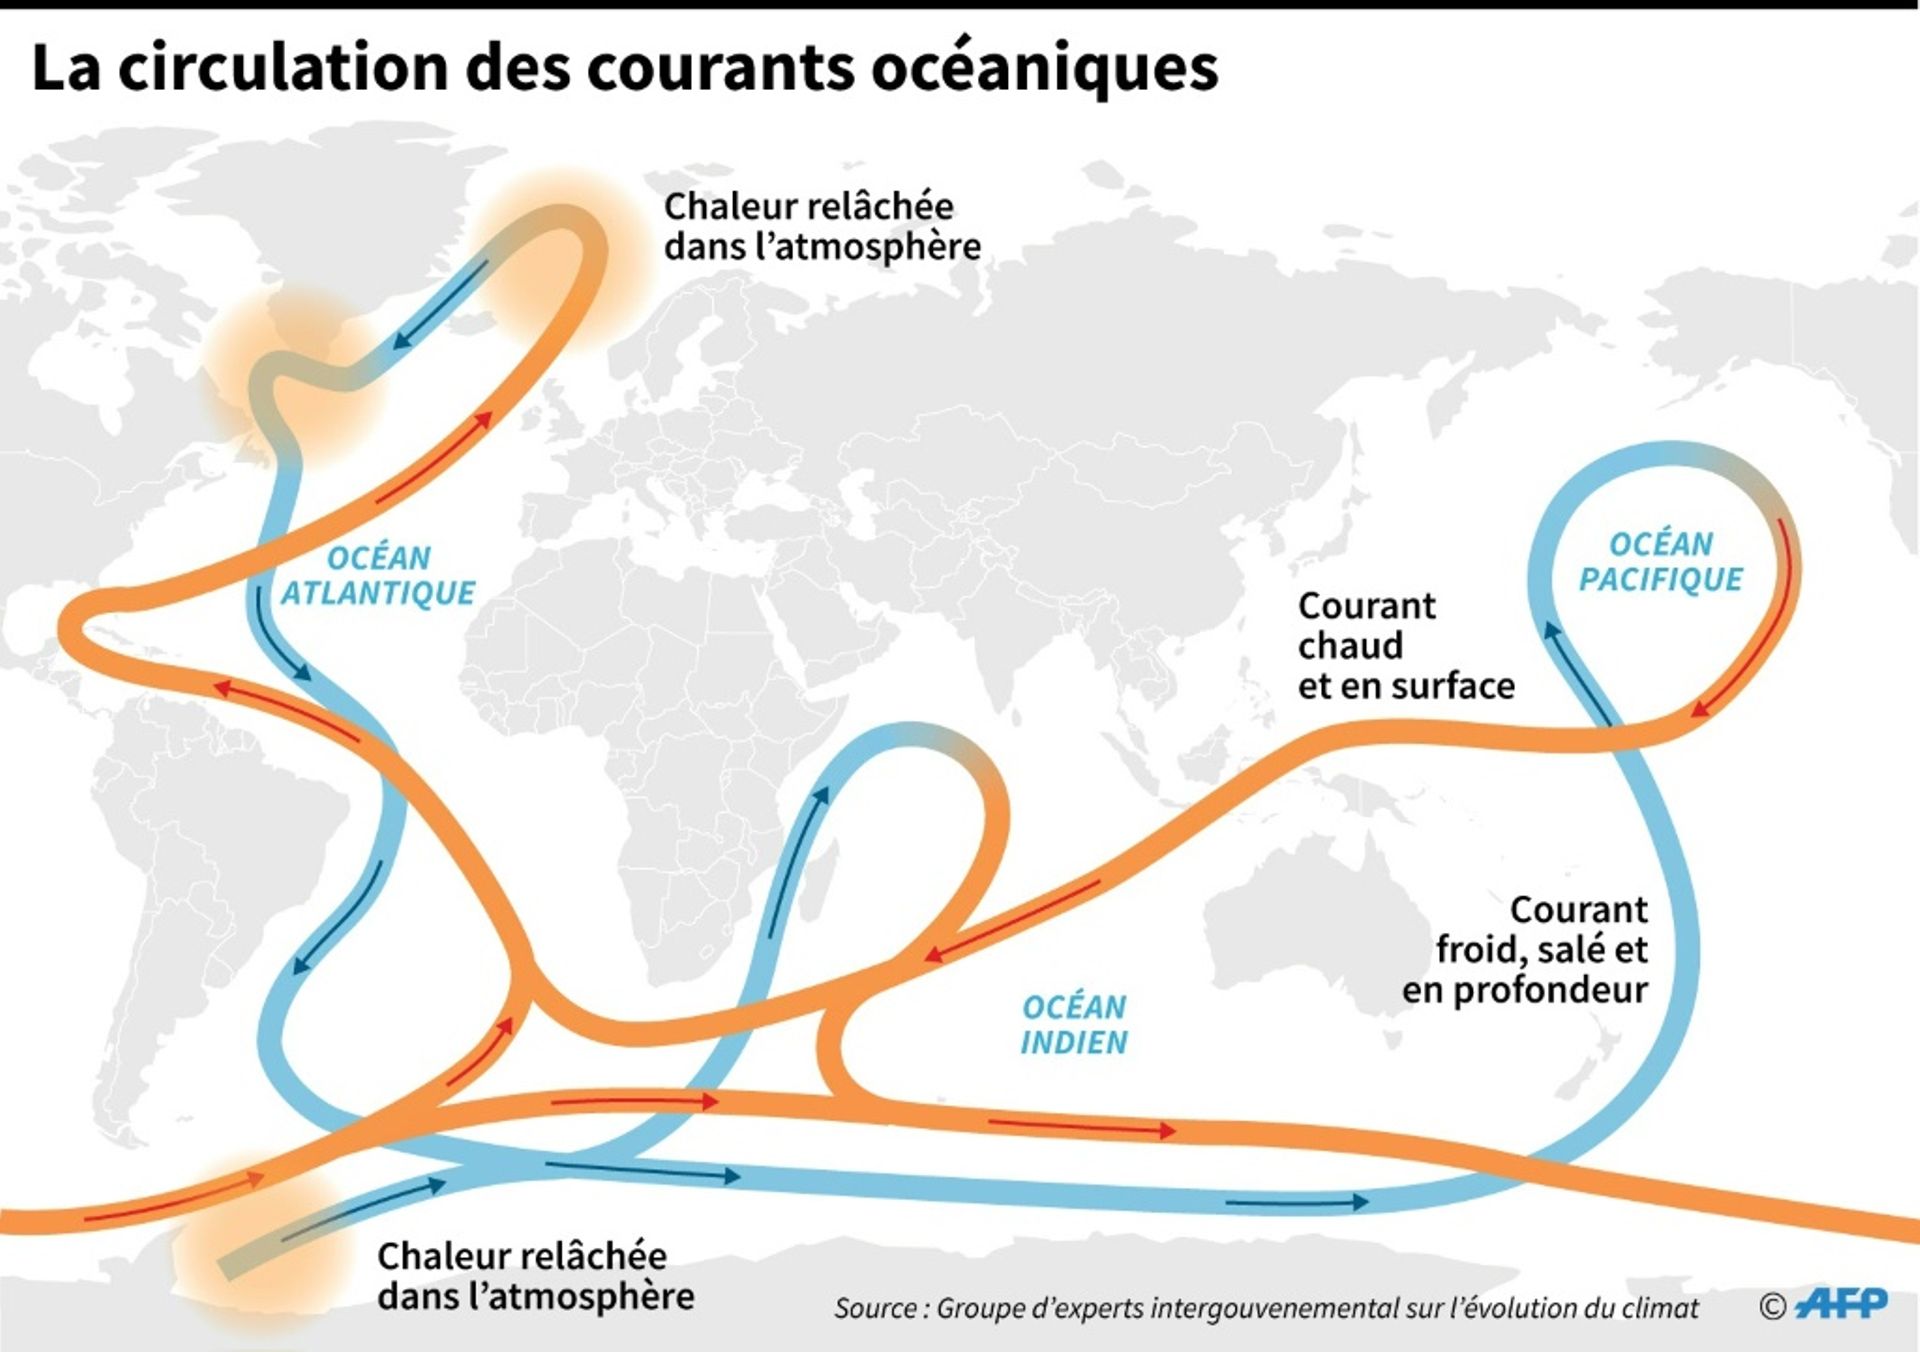 Le réchauffement perturbe la circulation des courants dans l'Atlantique -  